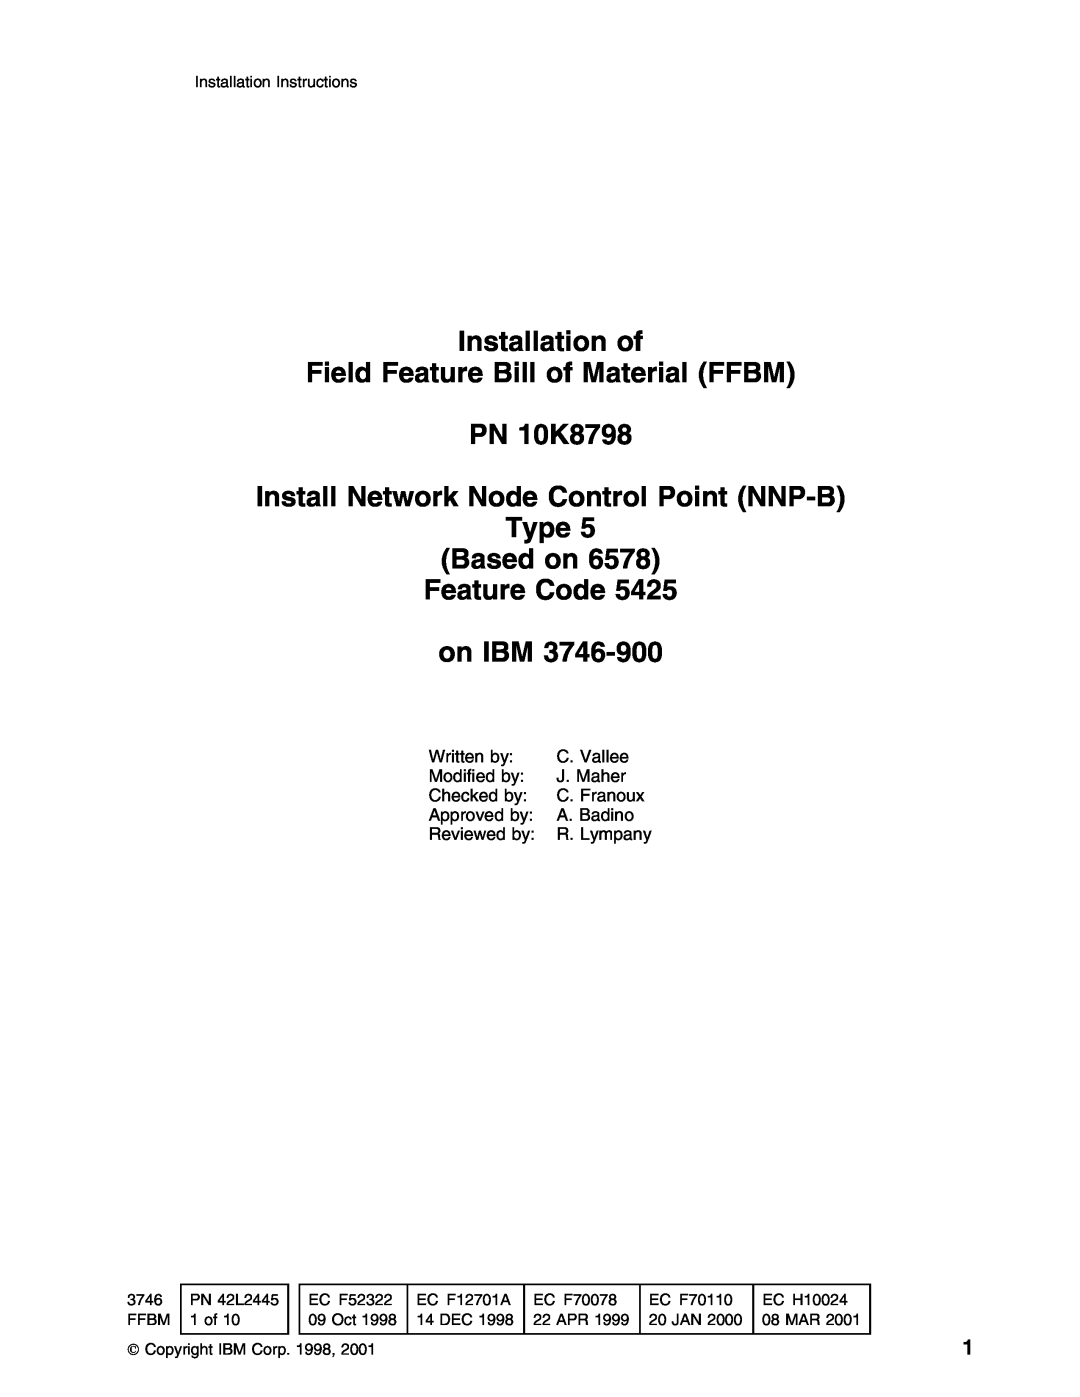 IBM installation instructions Installation of Field Feature Bill of Material FFBM PN 10K8798, on IBM 